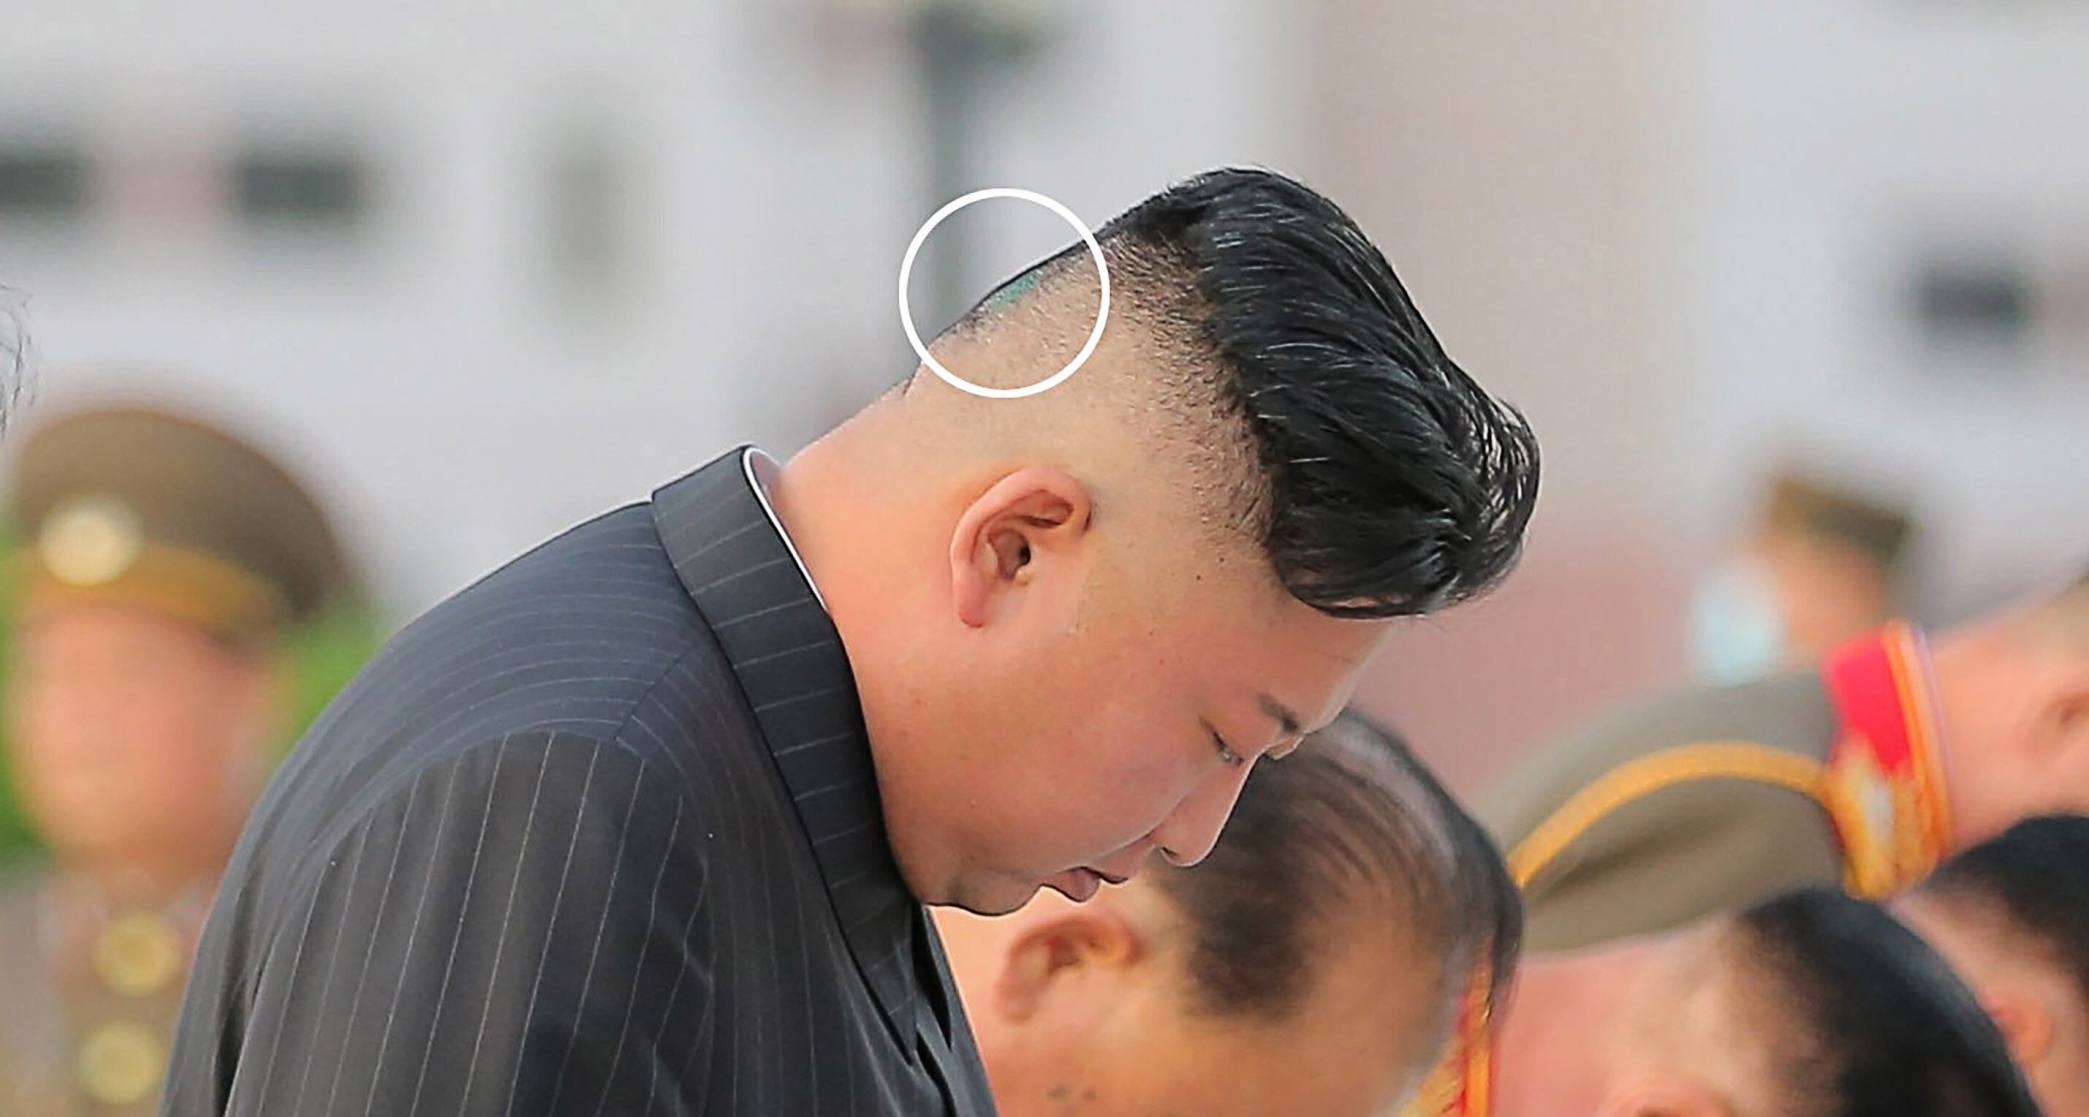 غرائب كوريا الشمالية